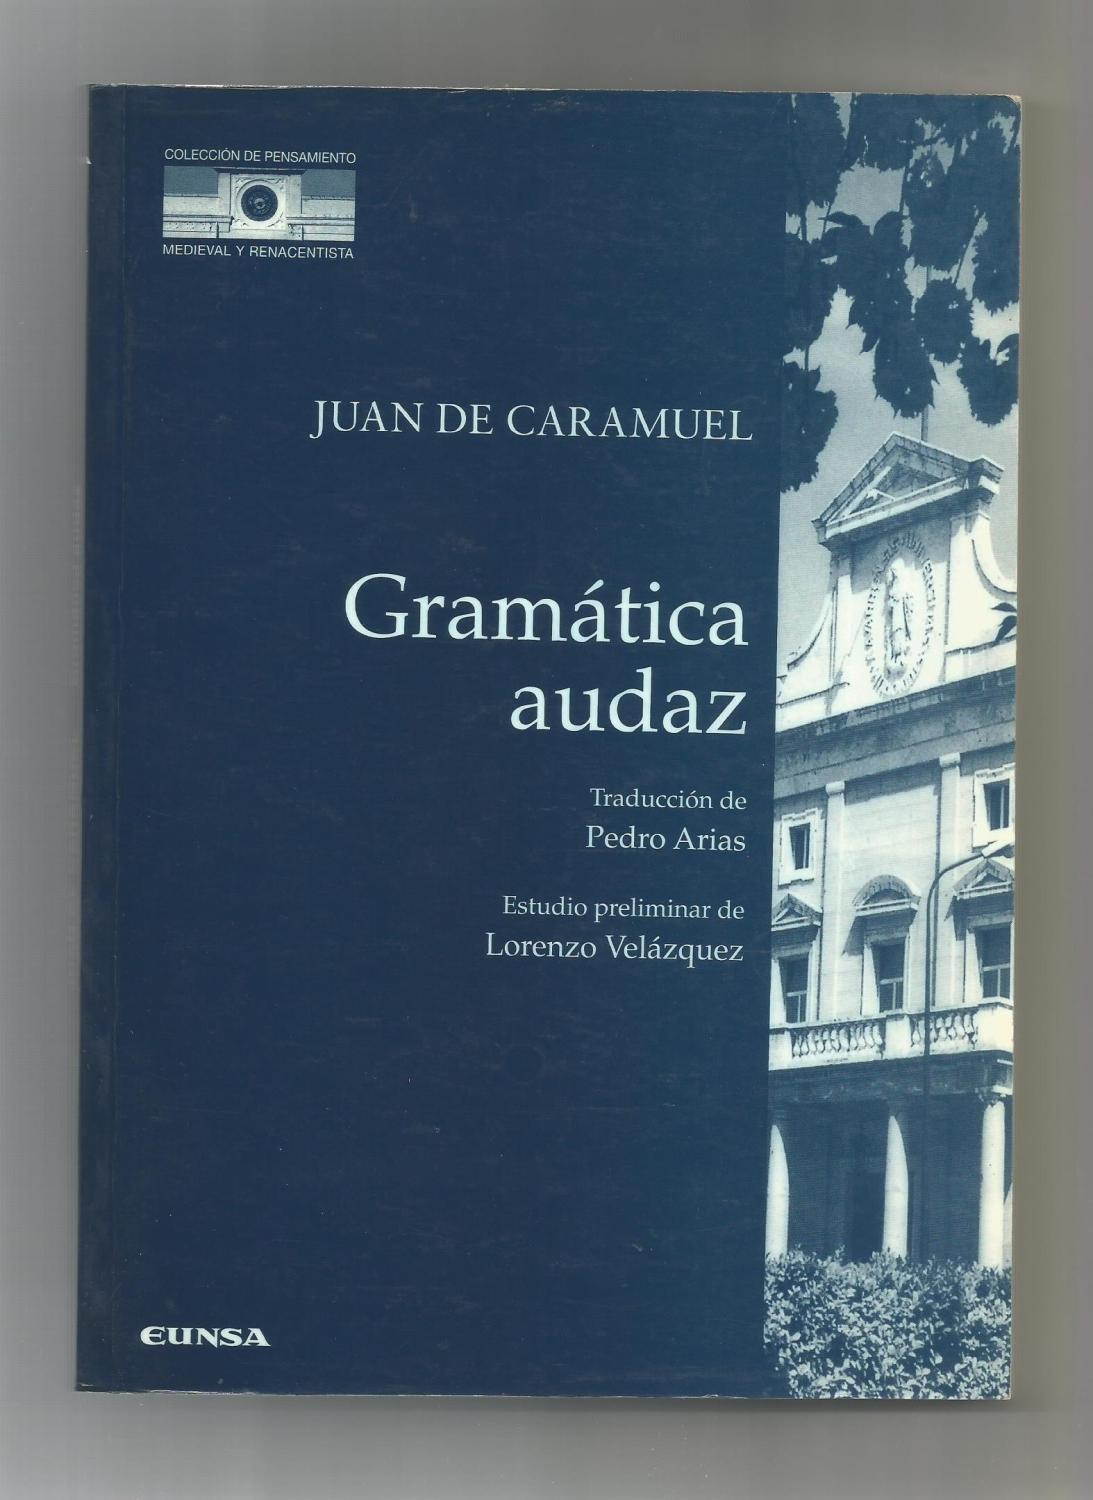 Imagen de portada del libro Gramática audaz